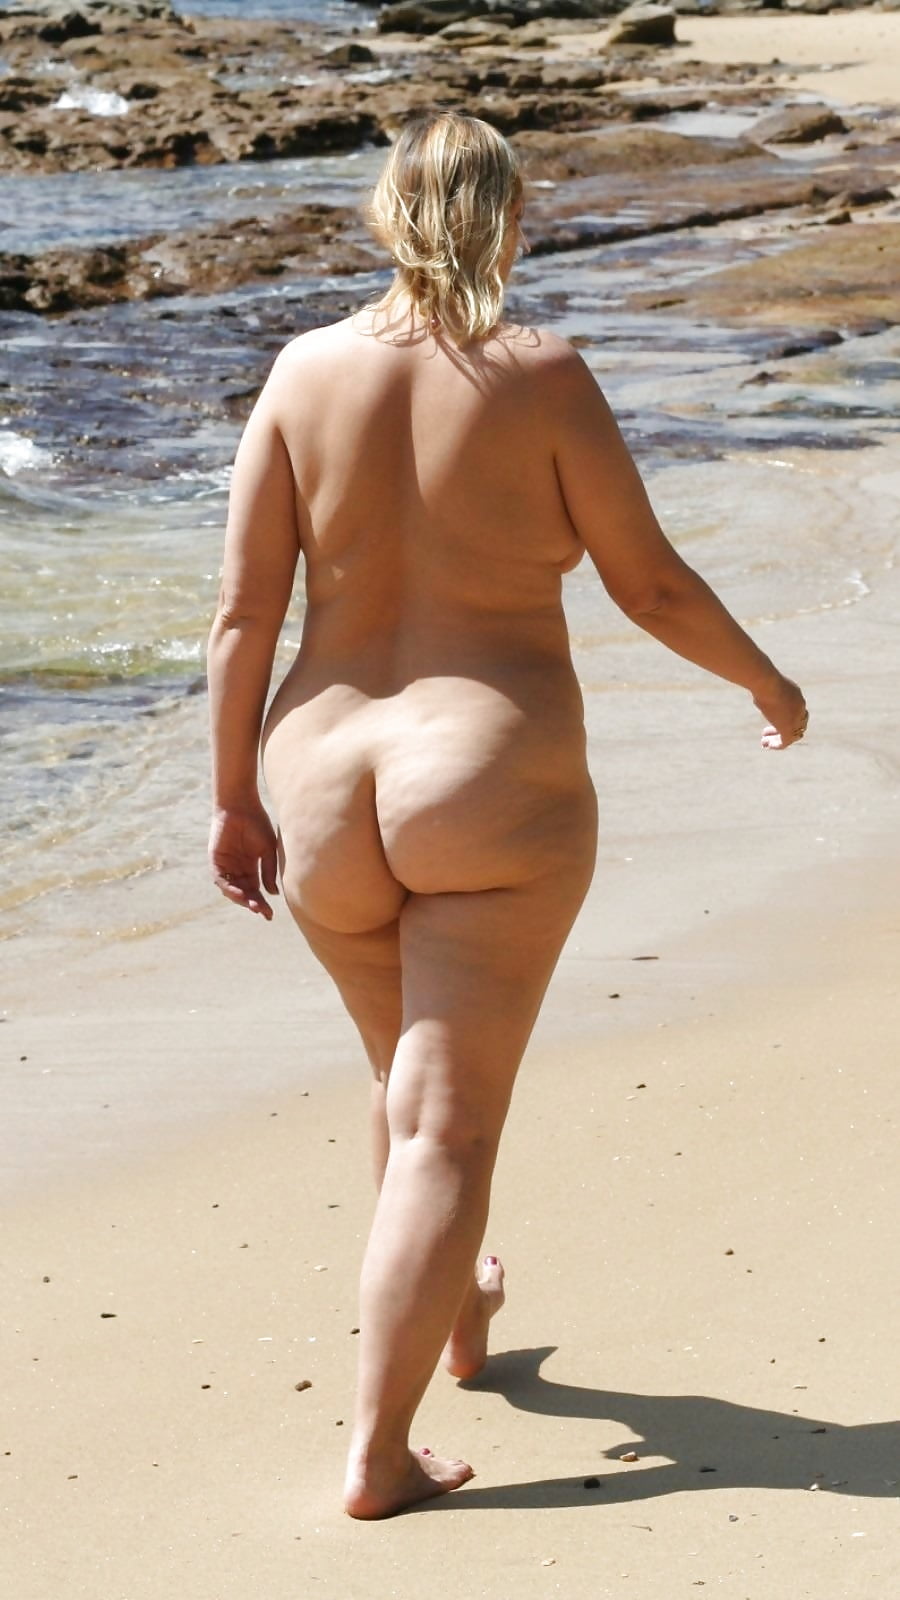 Mature women nude on beach